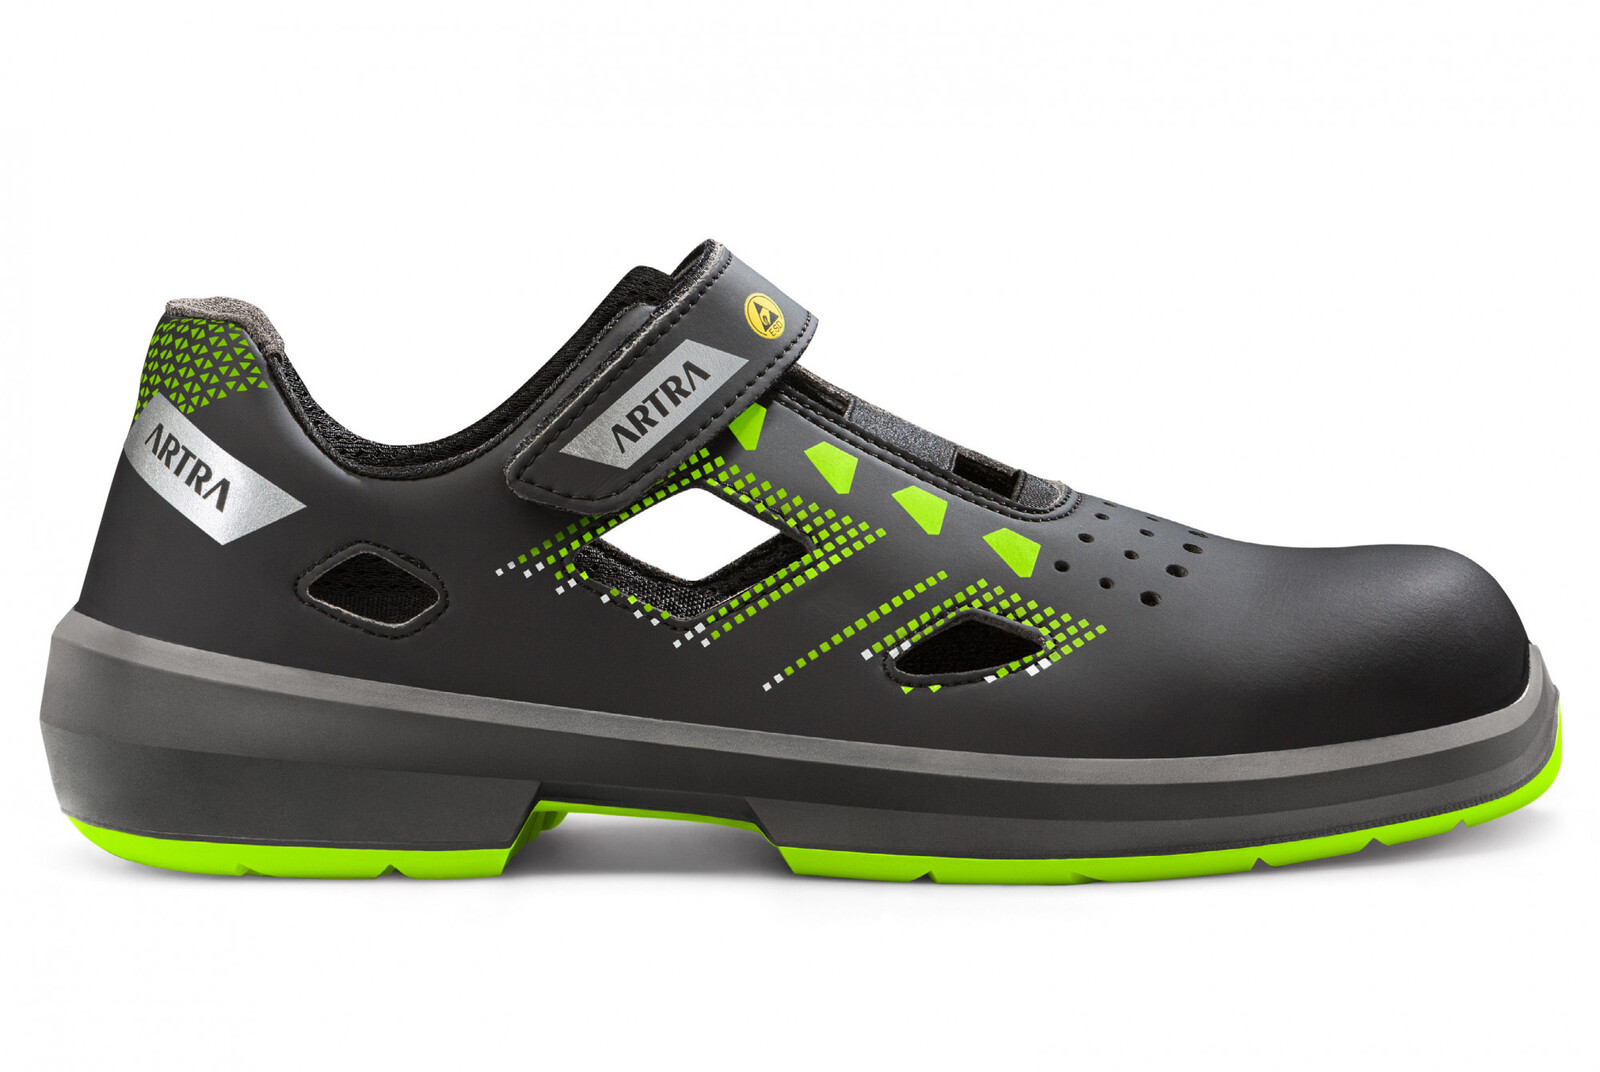 Bezpečnostné sandále Artra Arzo 805 678080 S1P SRC ESD MF - veľkosť: 46, farba: čierna/zelená